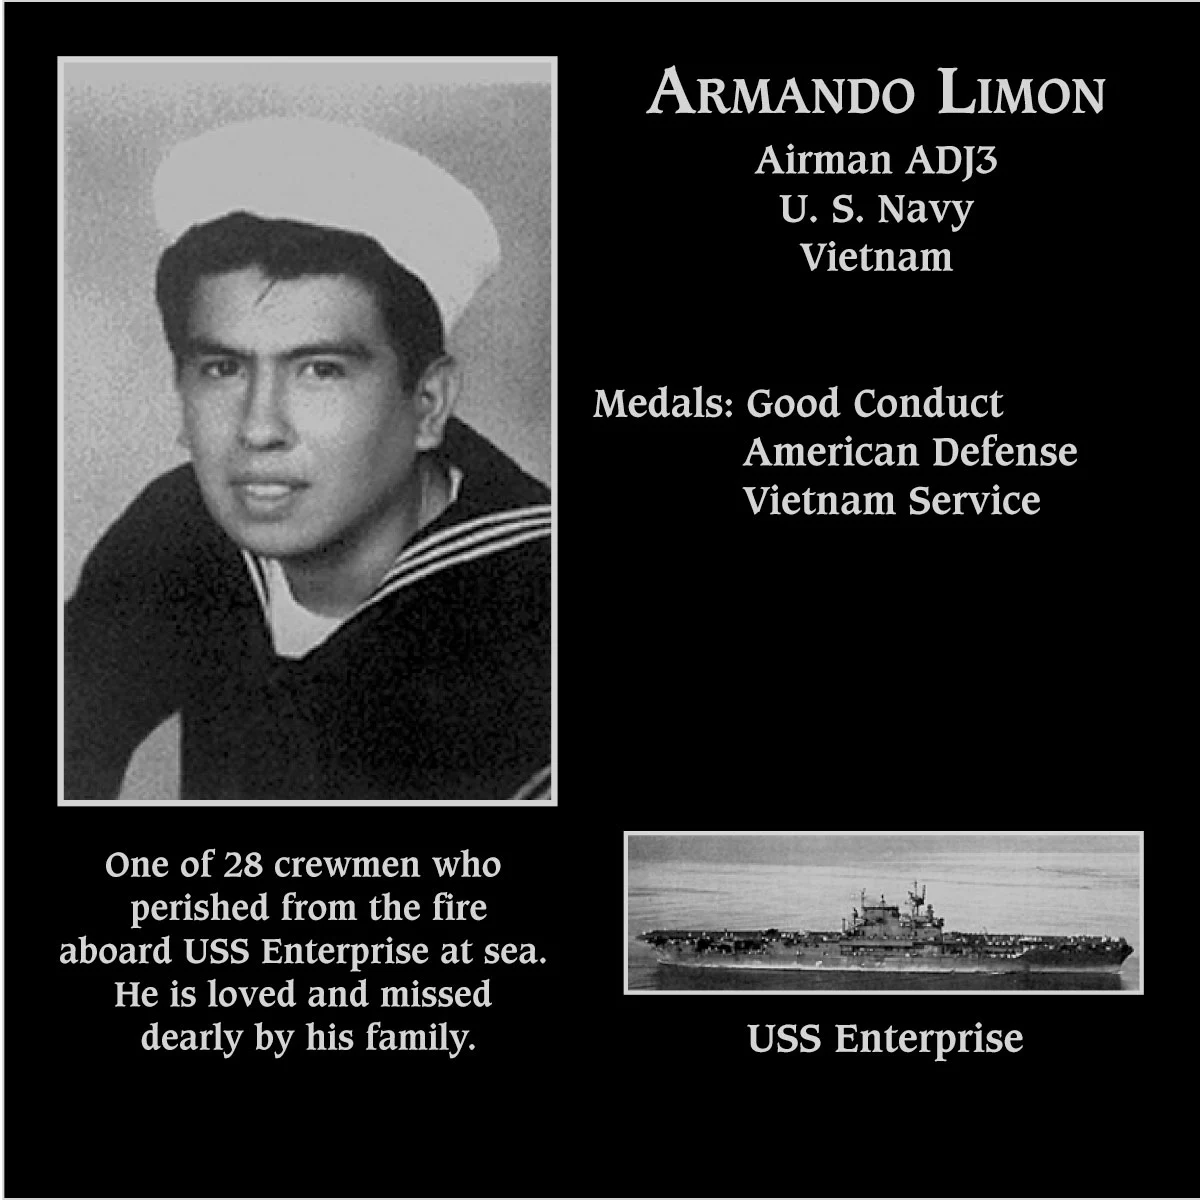 Armando Limon